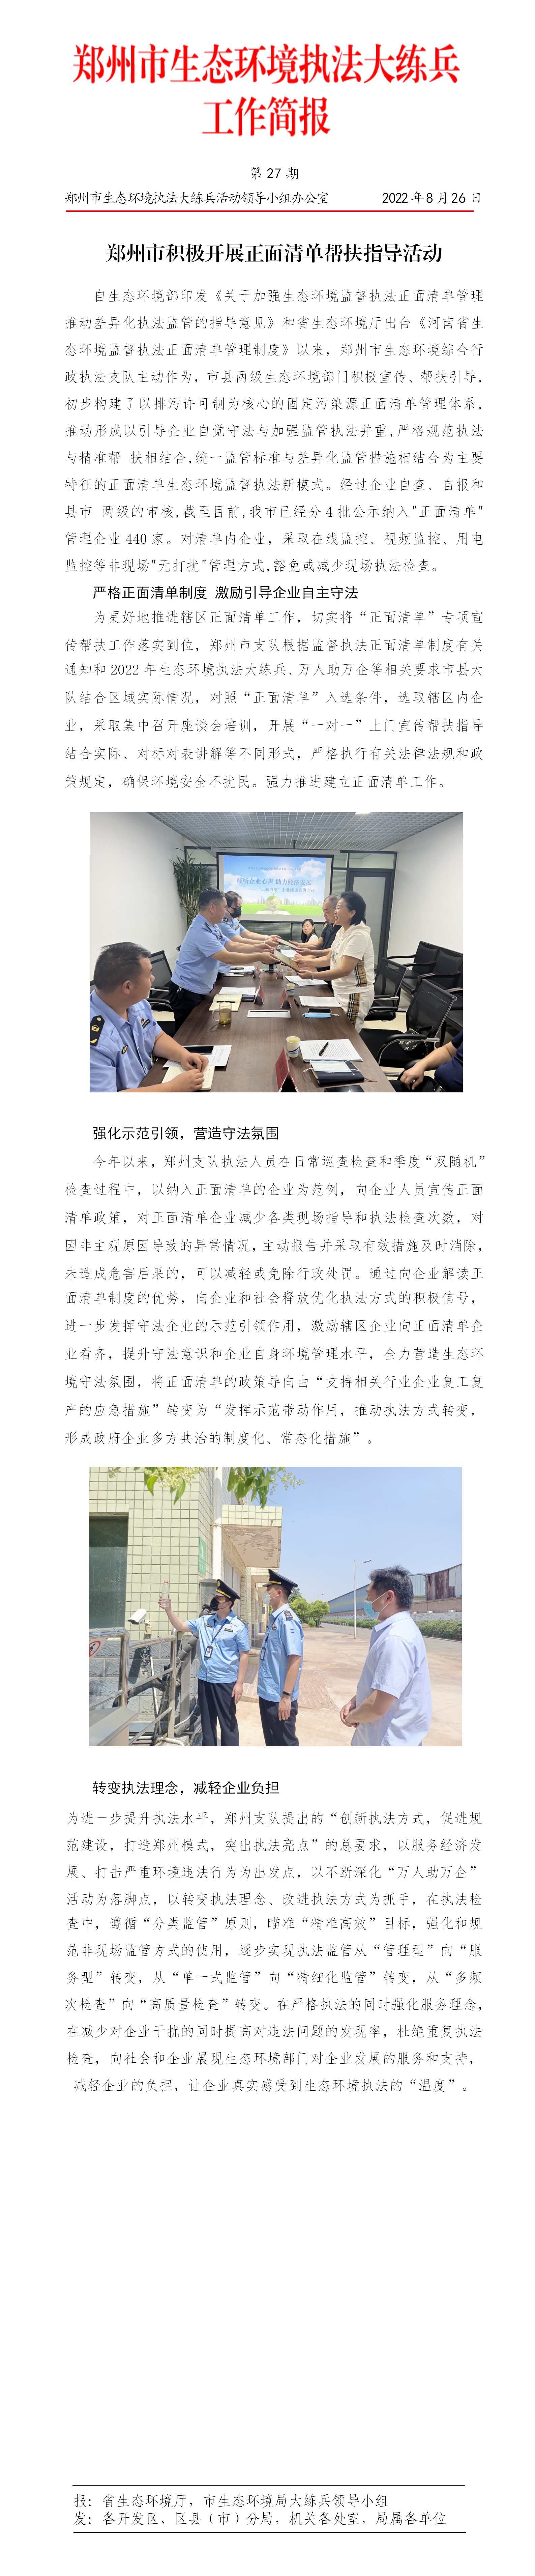 第27期 郑州市积极开展正面清单帮扶指导活动_01.png